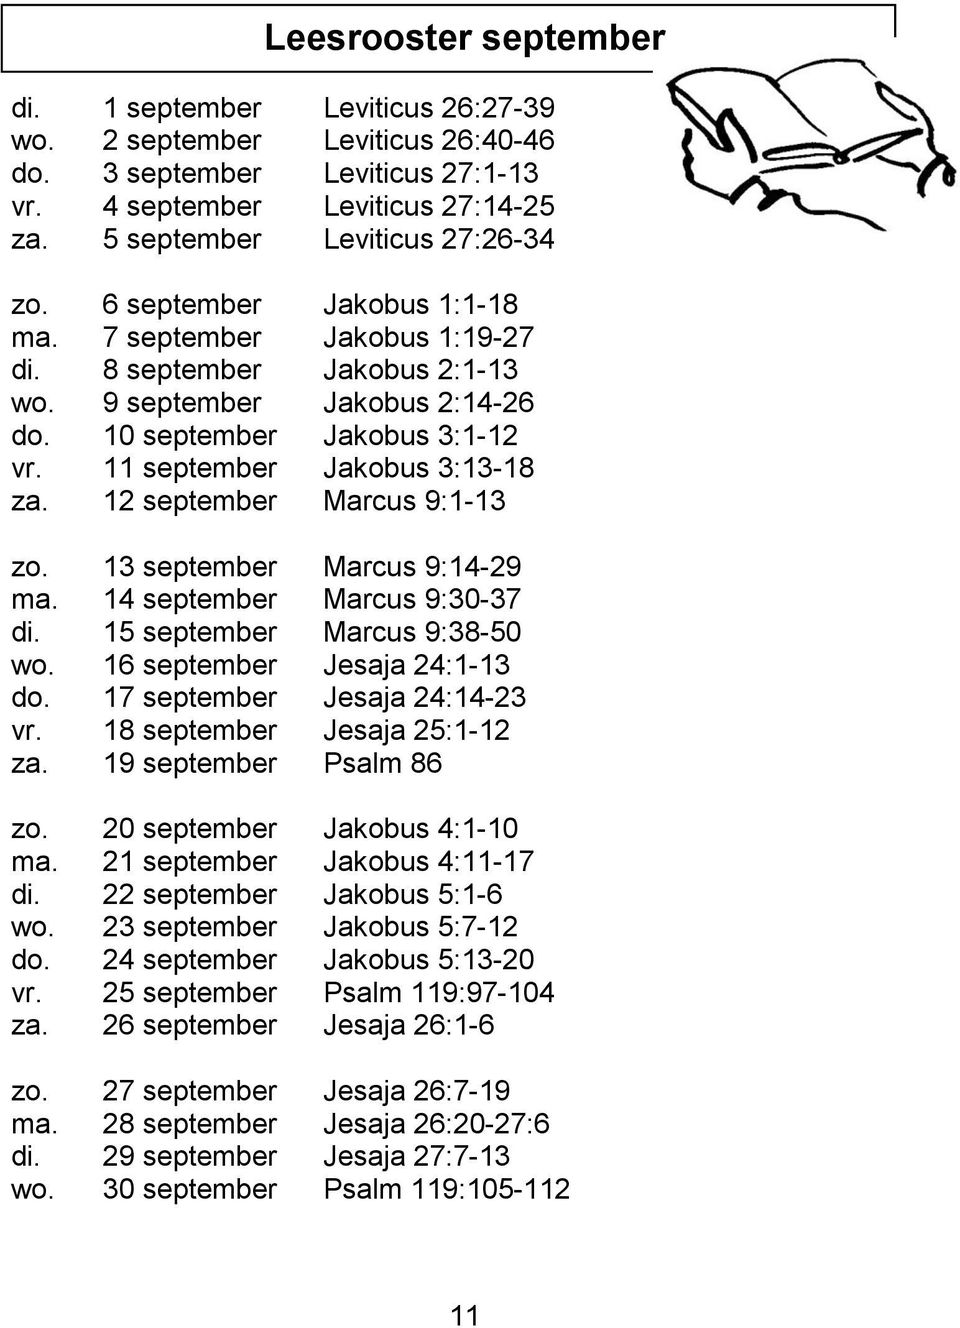 12 september Marcus 9:1-13 zo. 13 september Marcus 9:14-29 ma. 14 september Marcus 9:30-37 di. 15 september Marcus 9:38-50 wo. 16 september Jesaja 24:1-13 do. 17 september Jesaja 24:14-23 vr.